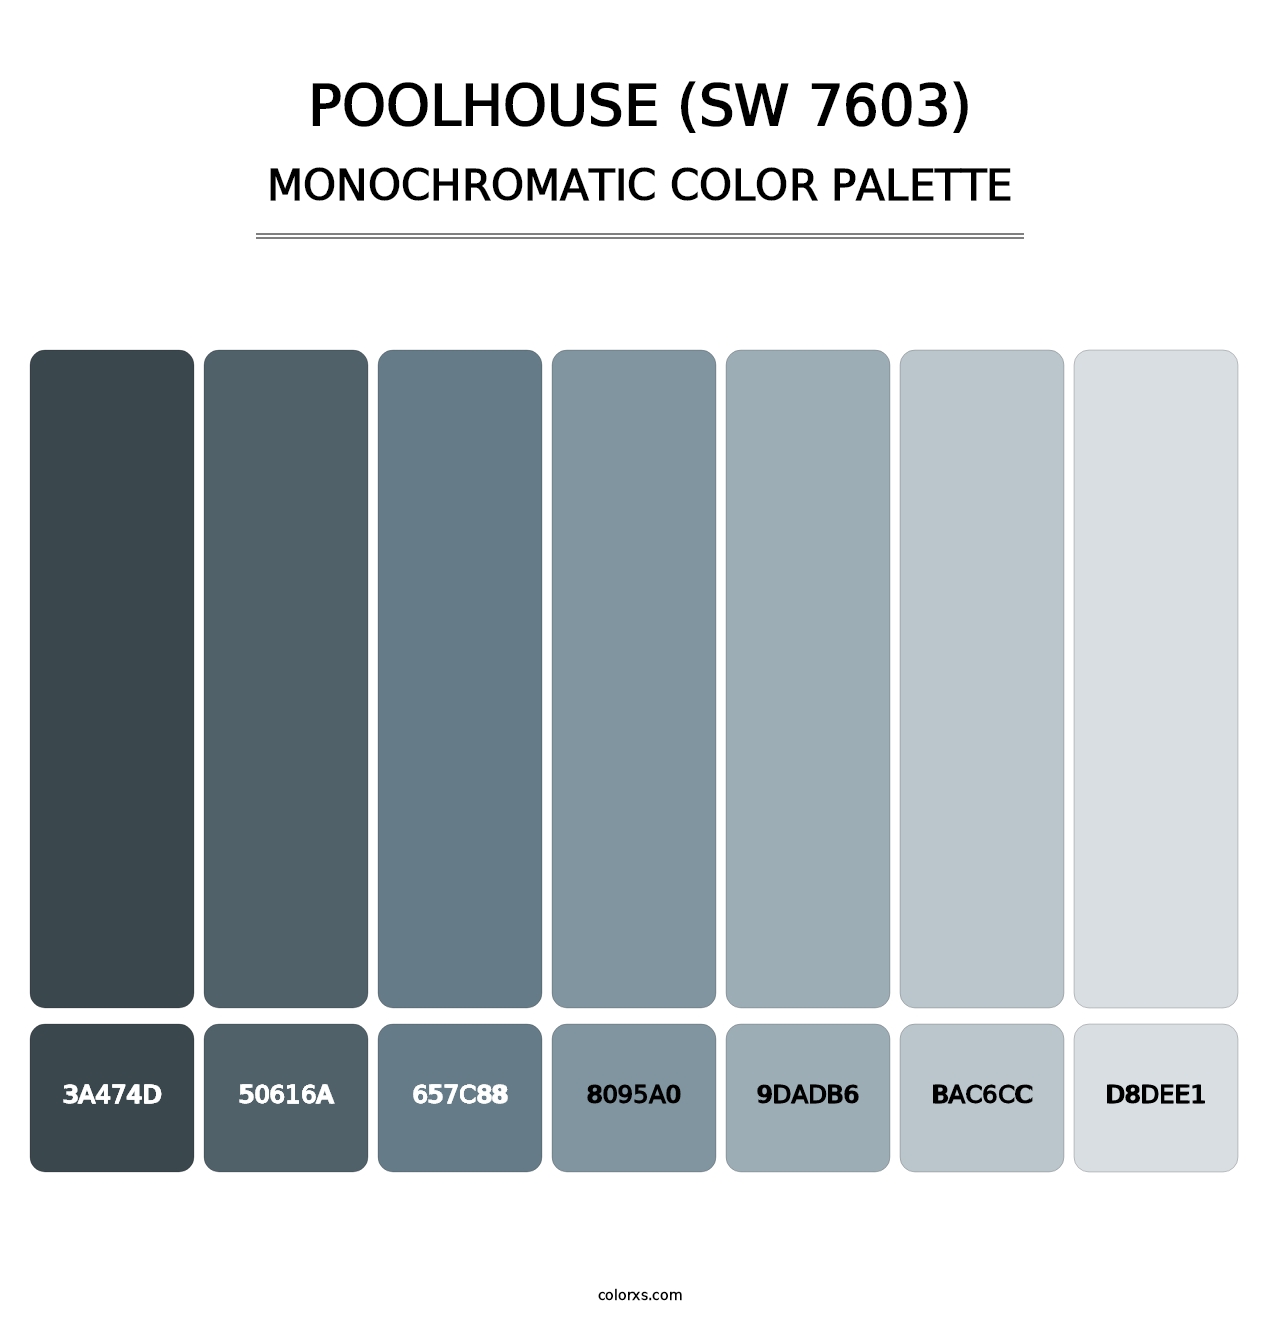 Poolhouse (SW 7603) - Monochromatic Color Palette